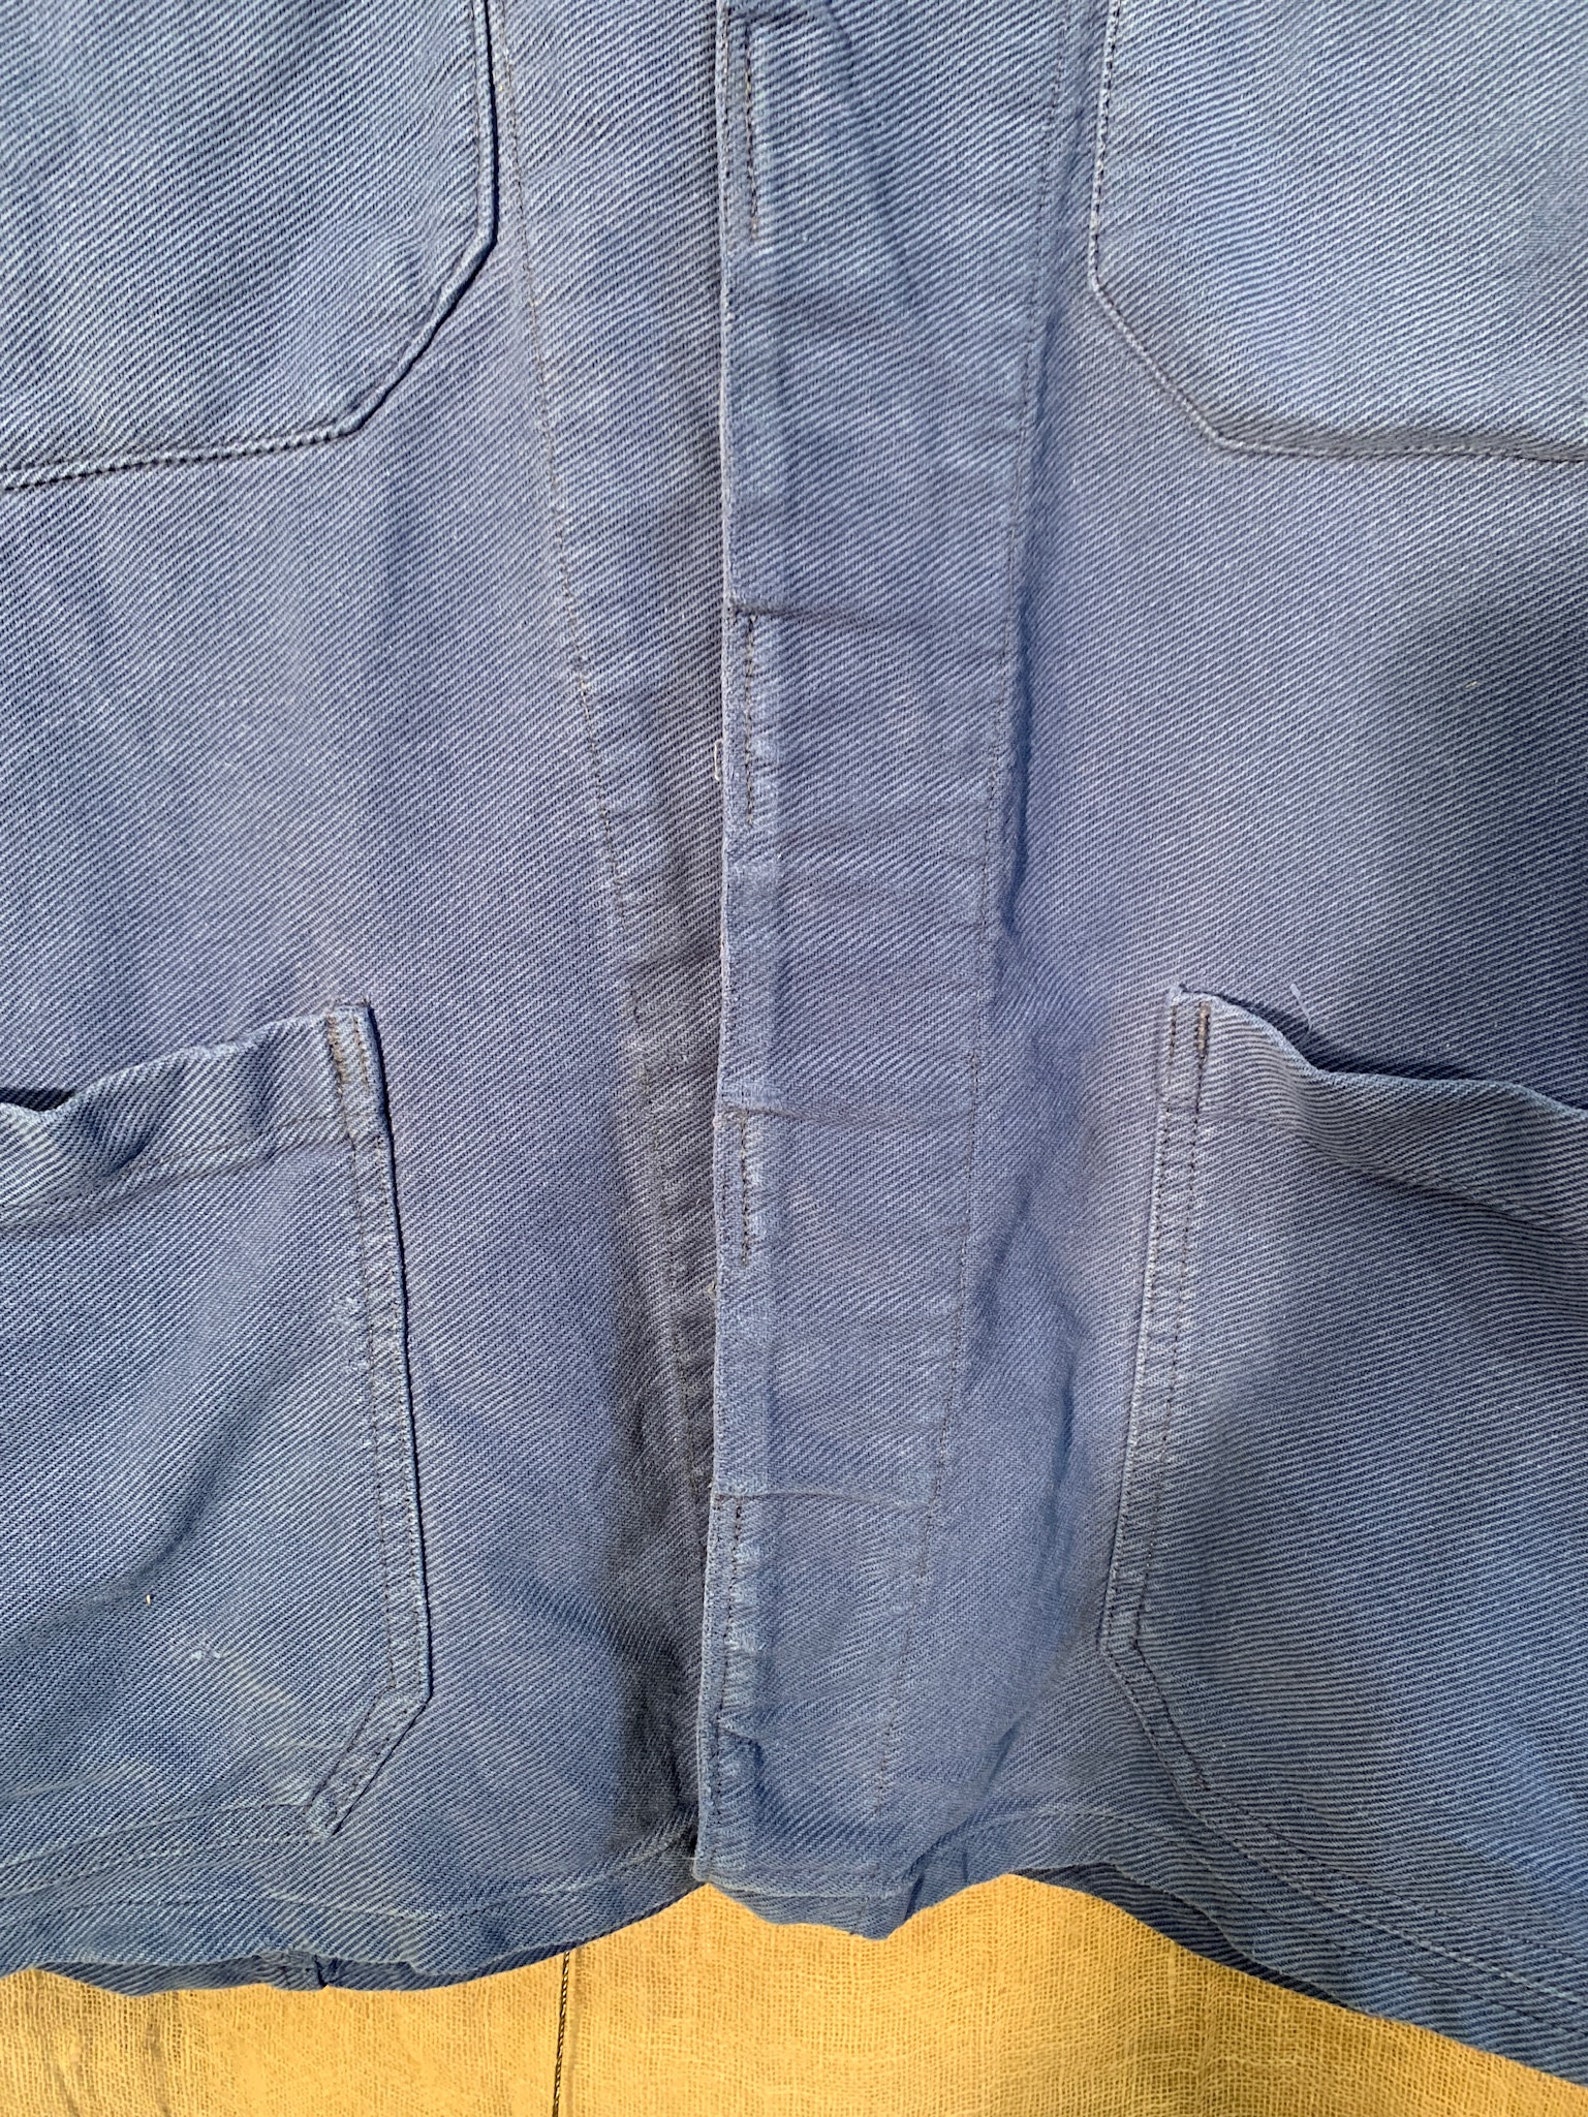 Electric Blue Vintage Cotton Workwear Jacket - Etsy UK